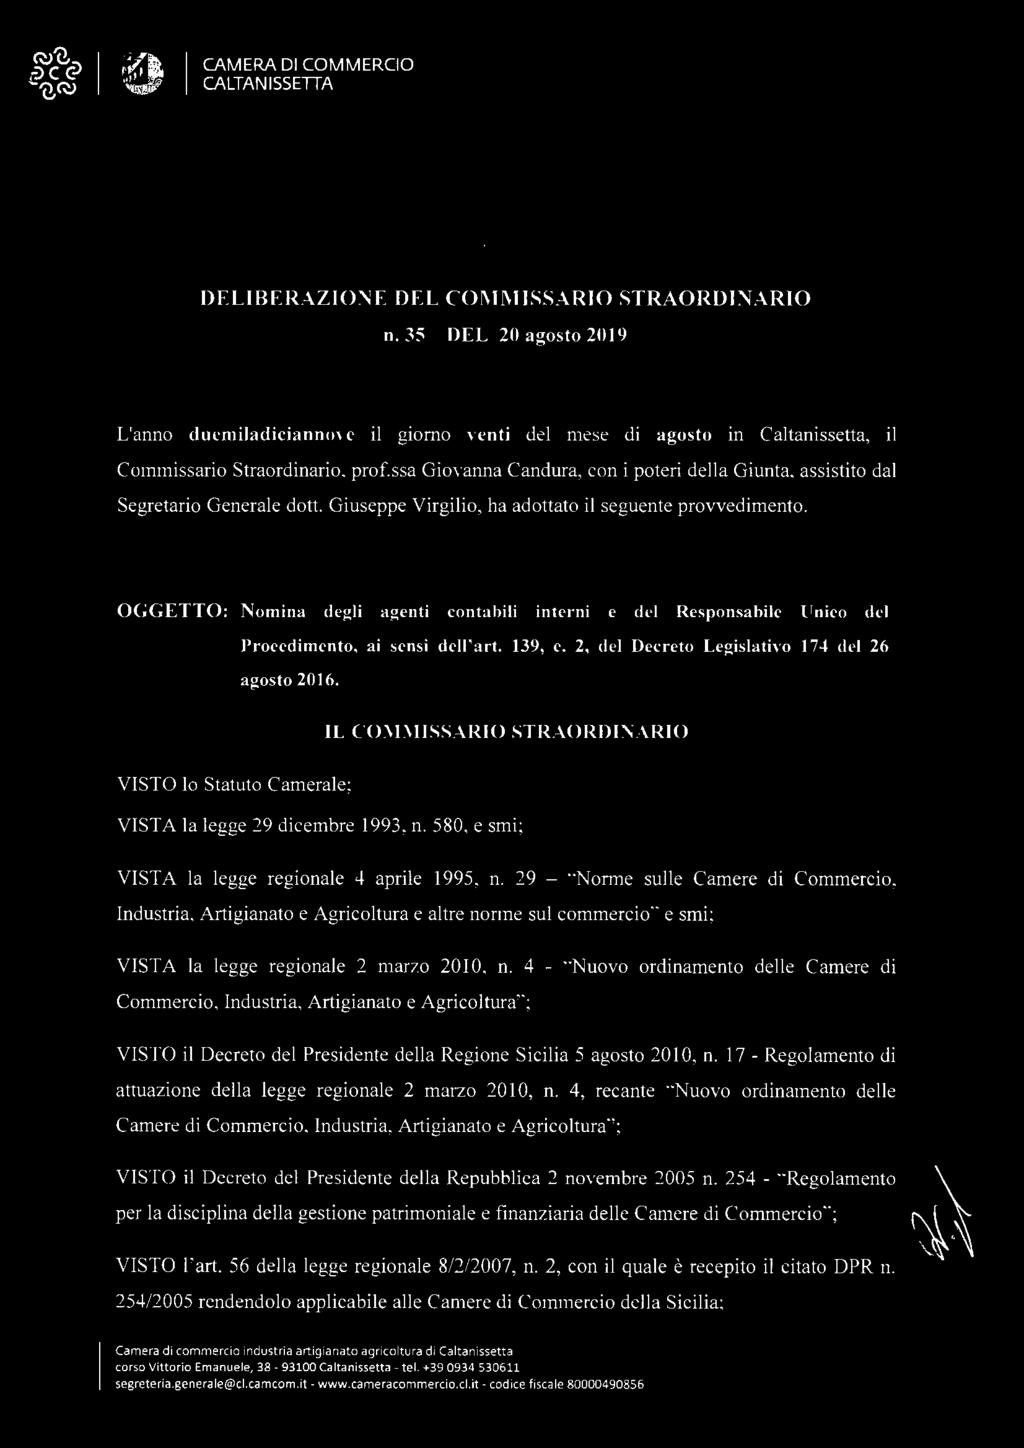 OGGETTO: Nomina degli agenti contabili interni e del Responsabile Unico del Procedimento, ai sensi dell'art. 139, c. 2, del Decreto Legislativo 174 del 26 agosto 2016.